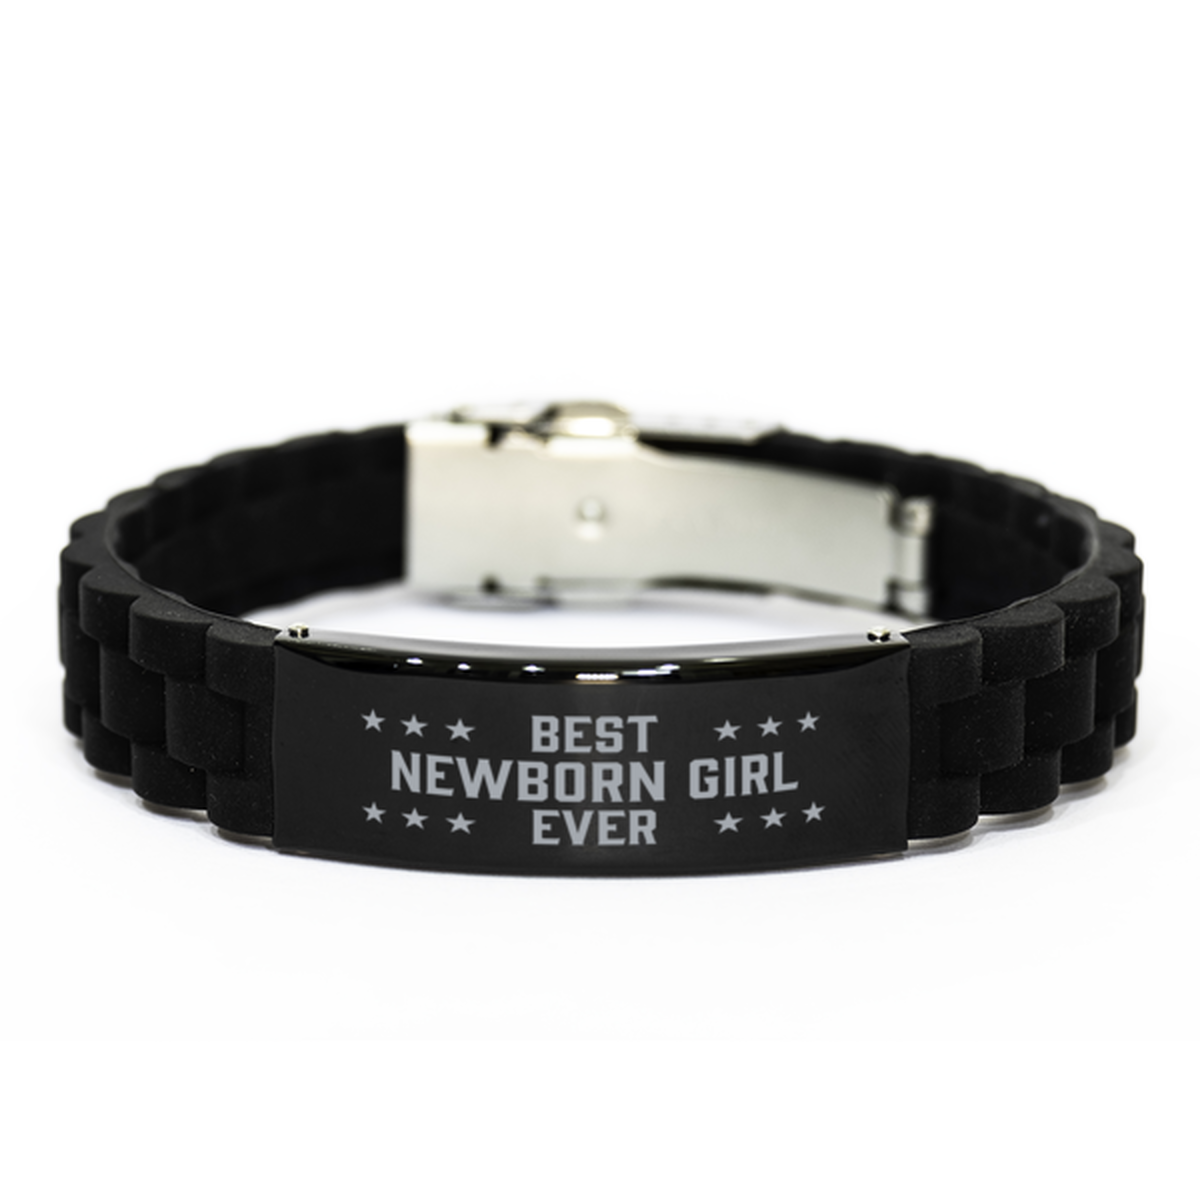 Best Newborn girl Ever Newborn girl Gifts, Funny Black Engraved Bracelet For Newborn girl, Family Gifts For Women